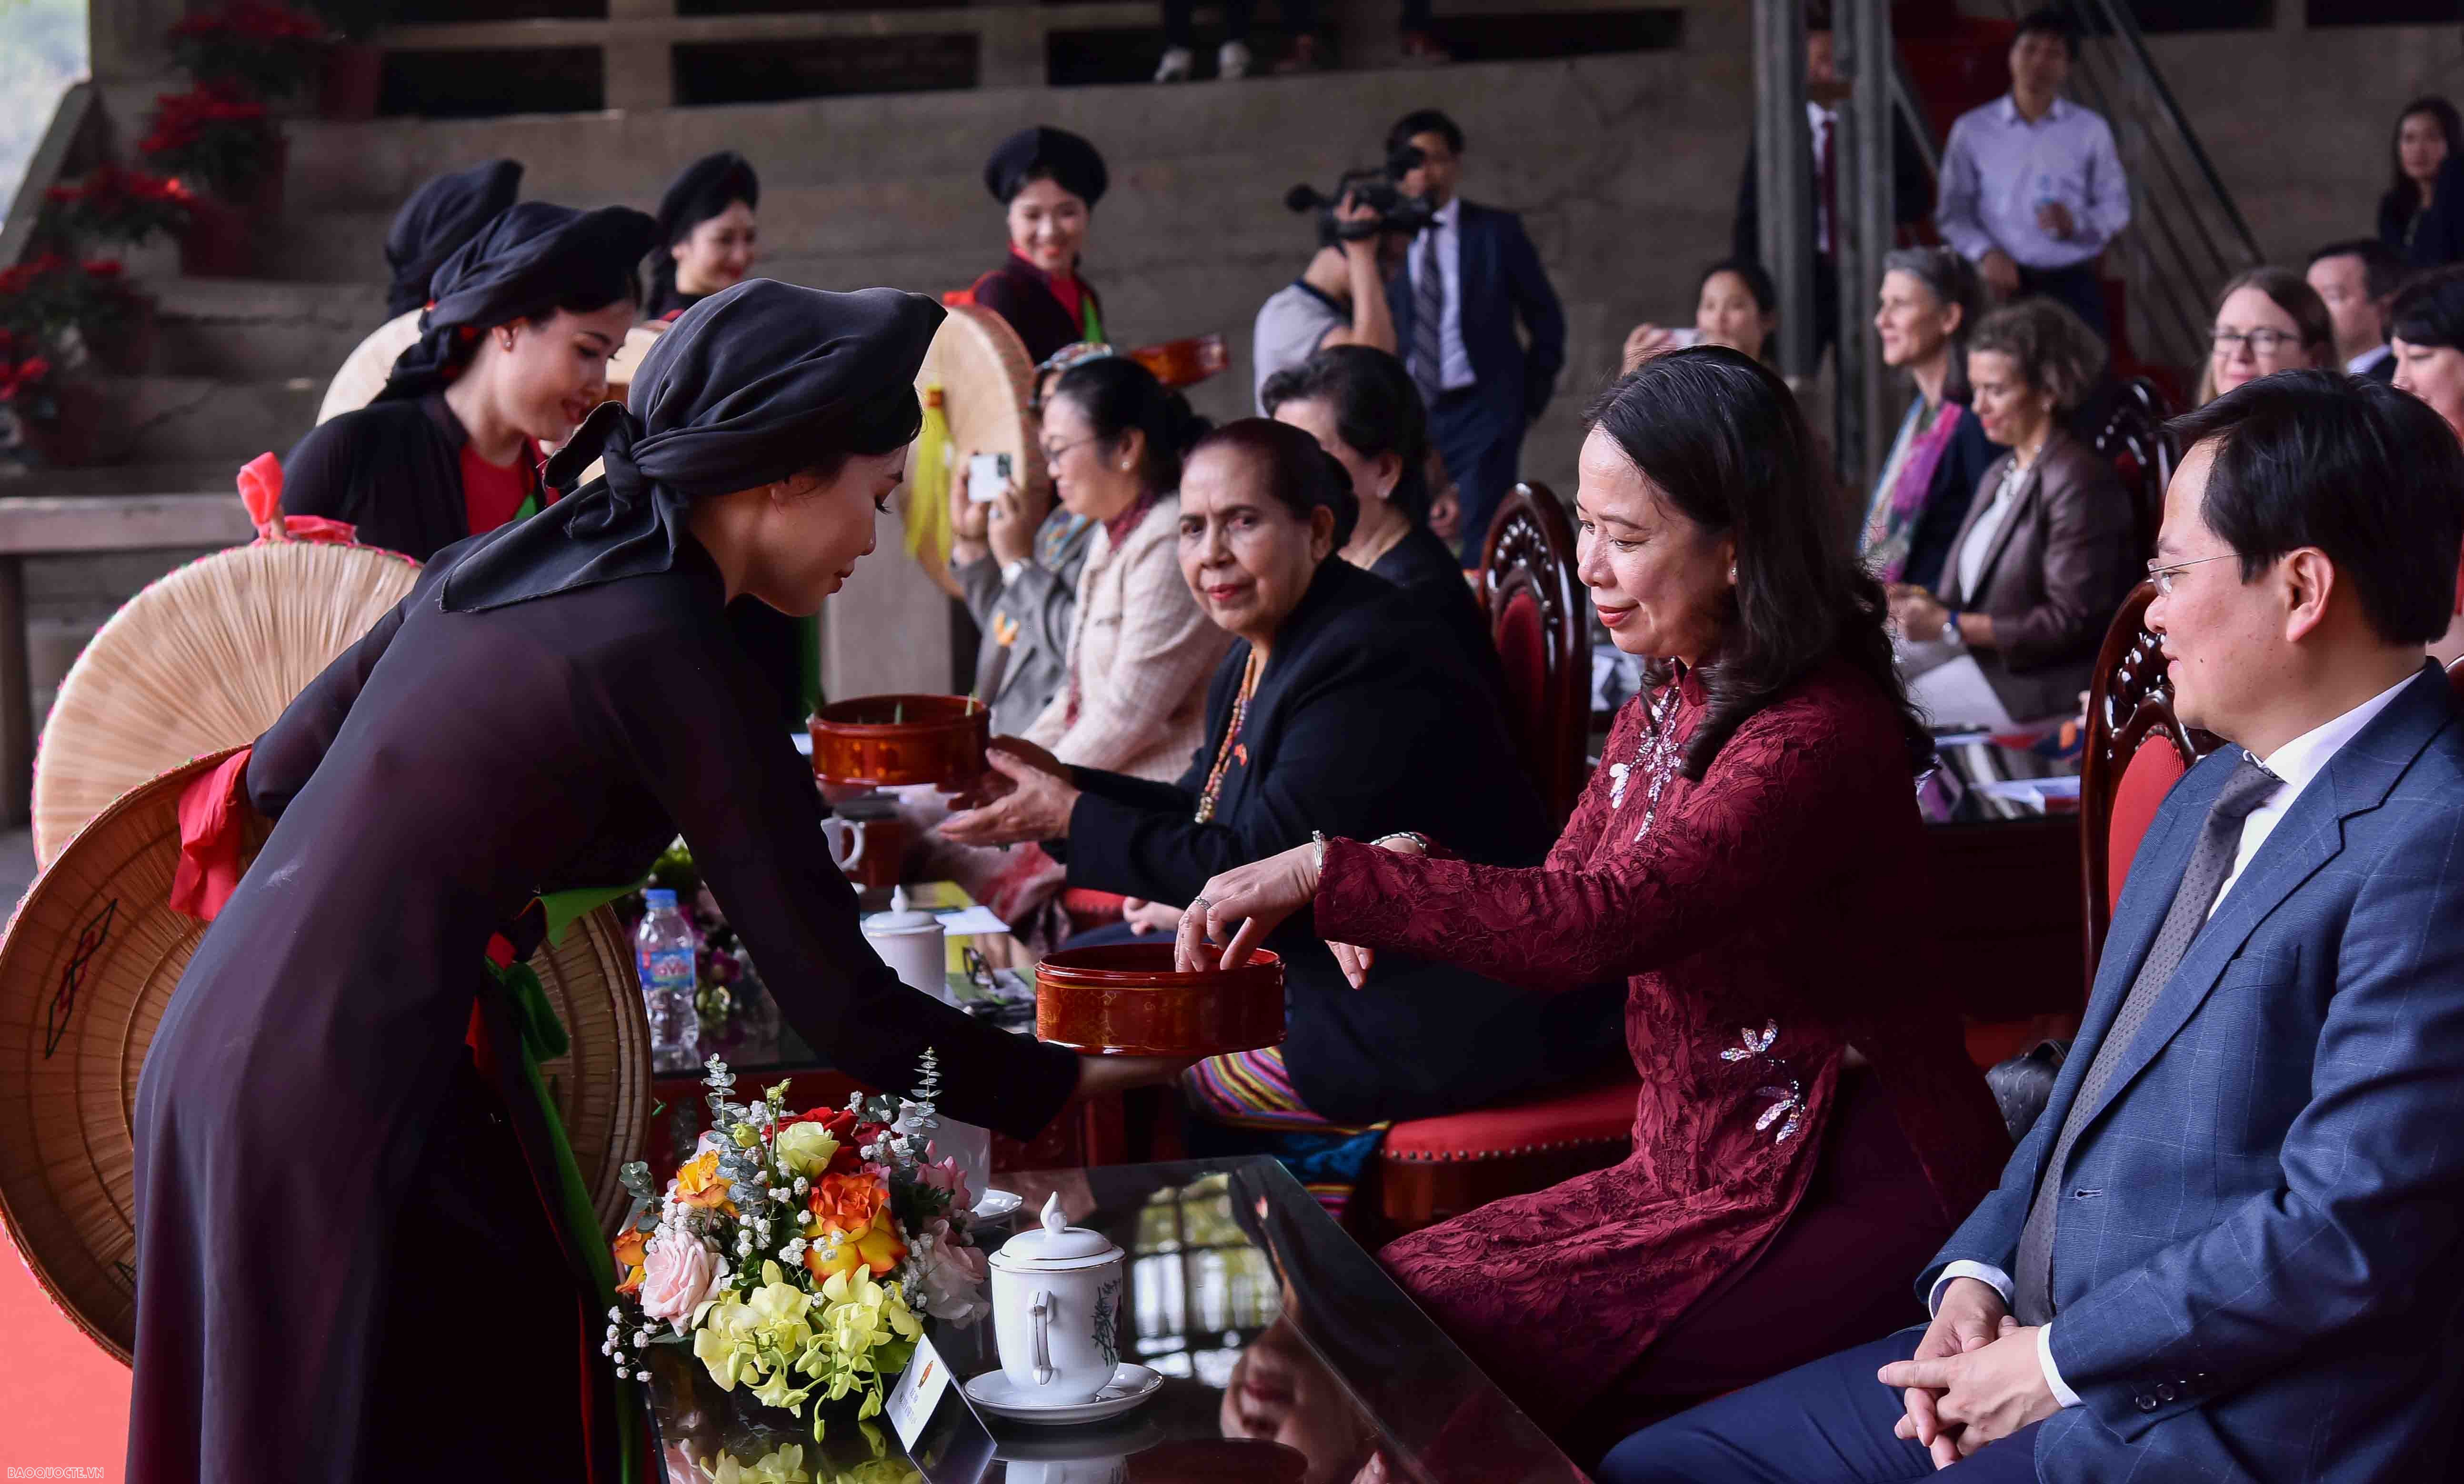 Phó Chủ tịch nước cùng các nữ Trưởng cơ quan đại diện nước ngoài tại Việt Nam trải nghiệm làm tranh Đông Hồ, nghe hát quan họ